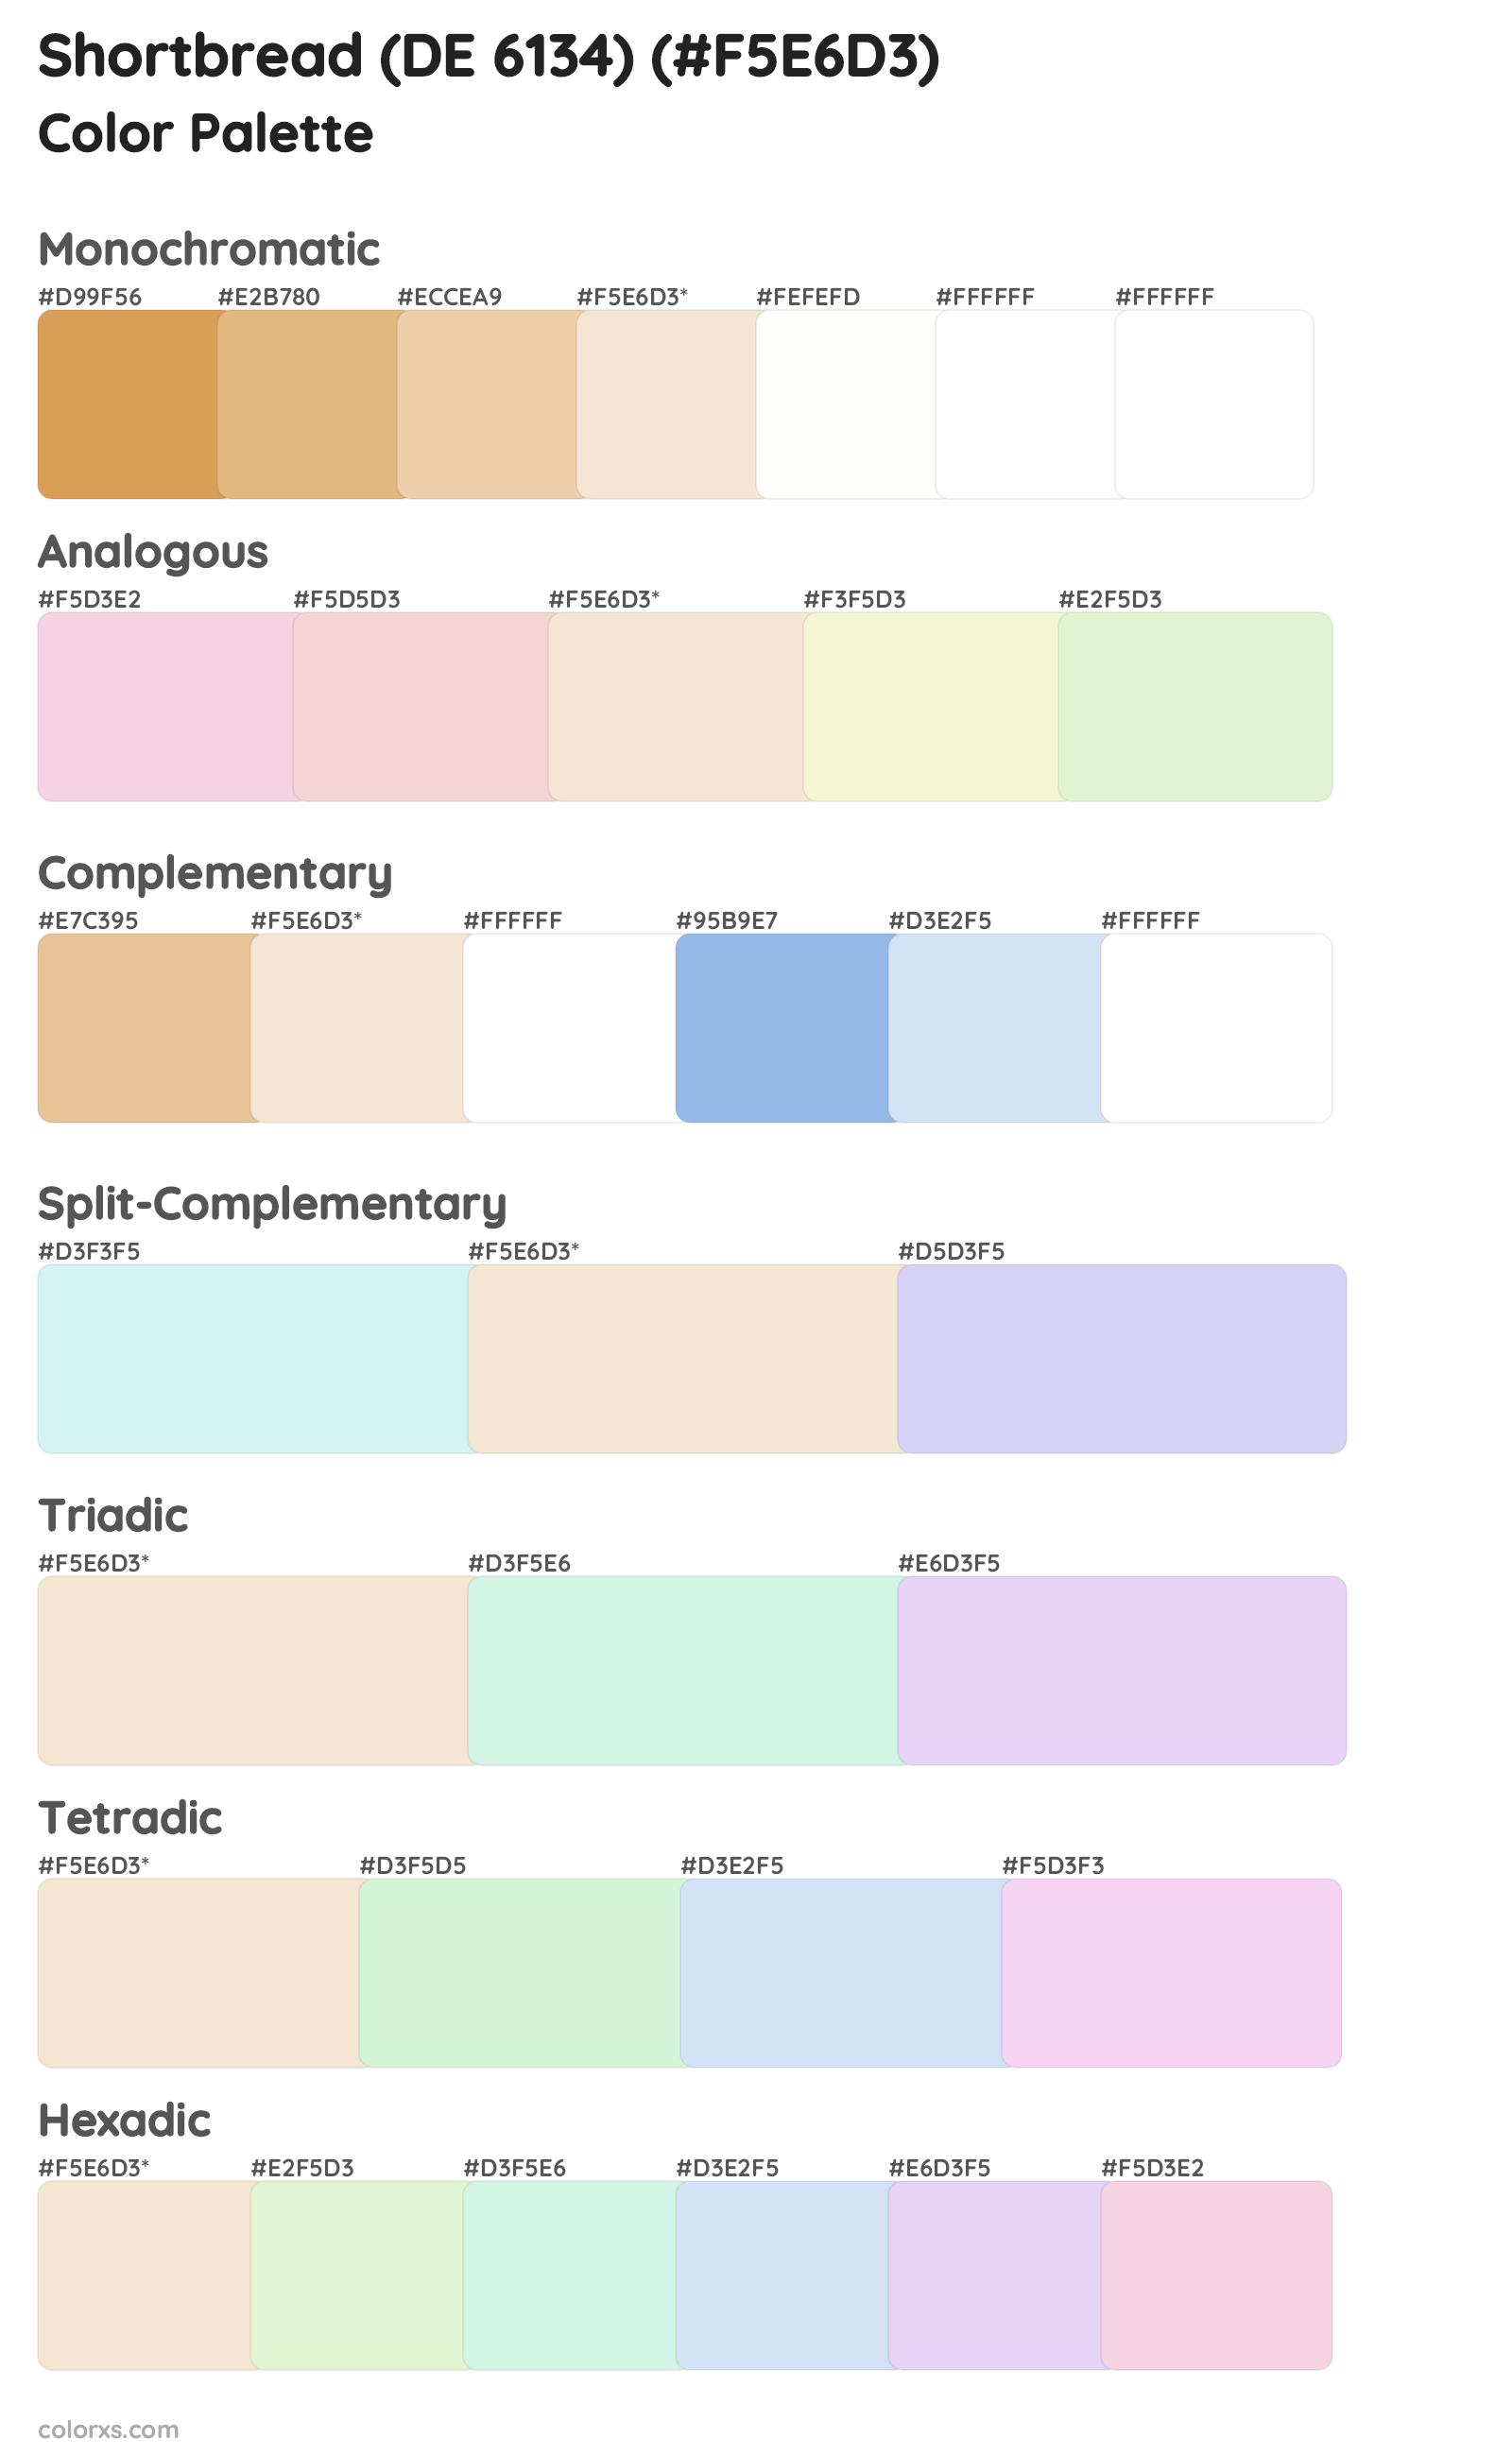 Shortbread (DE 6134) Color Scheme Palettes